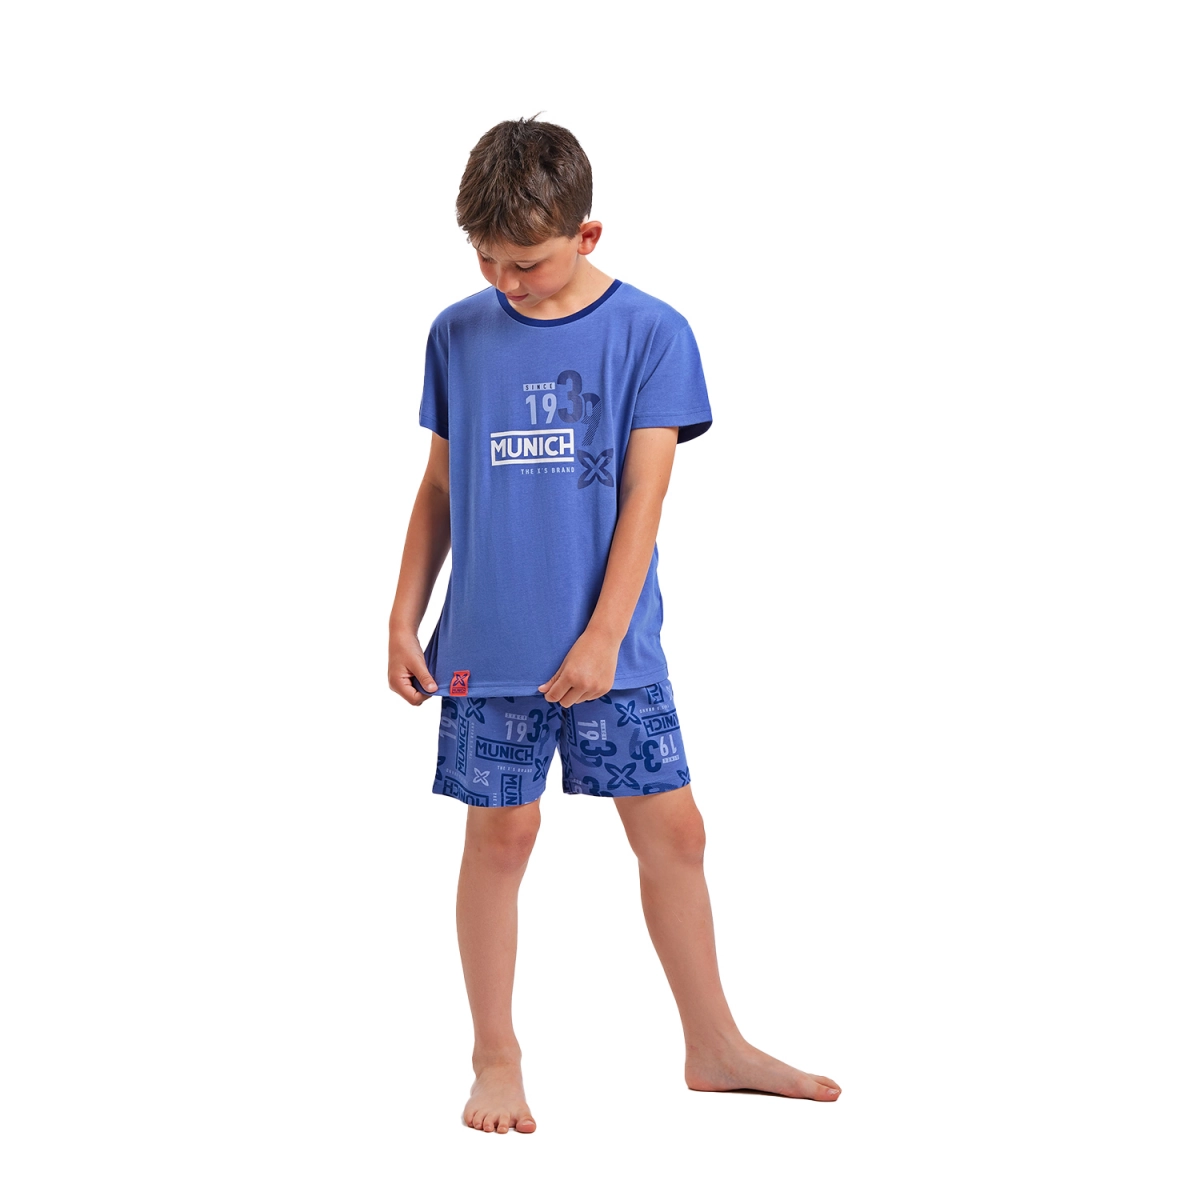 Pijama de manga corta y cuello redondo Munich DH1351 niño Talla: 8 AÑOS Color: Azul DH1351.8 AÑOS